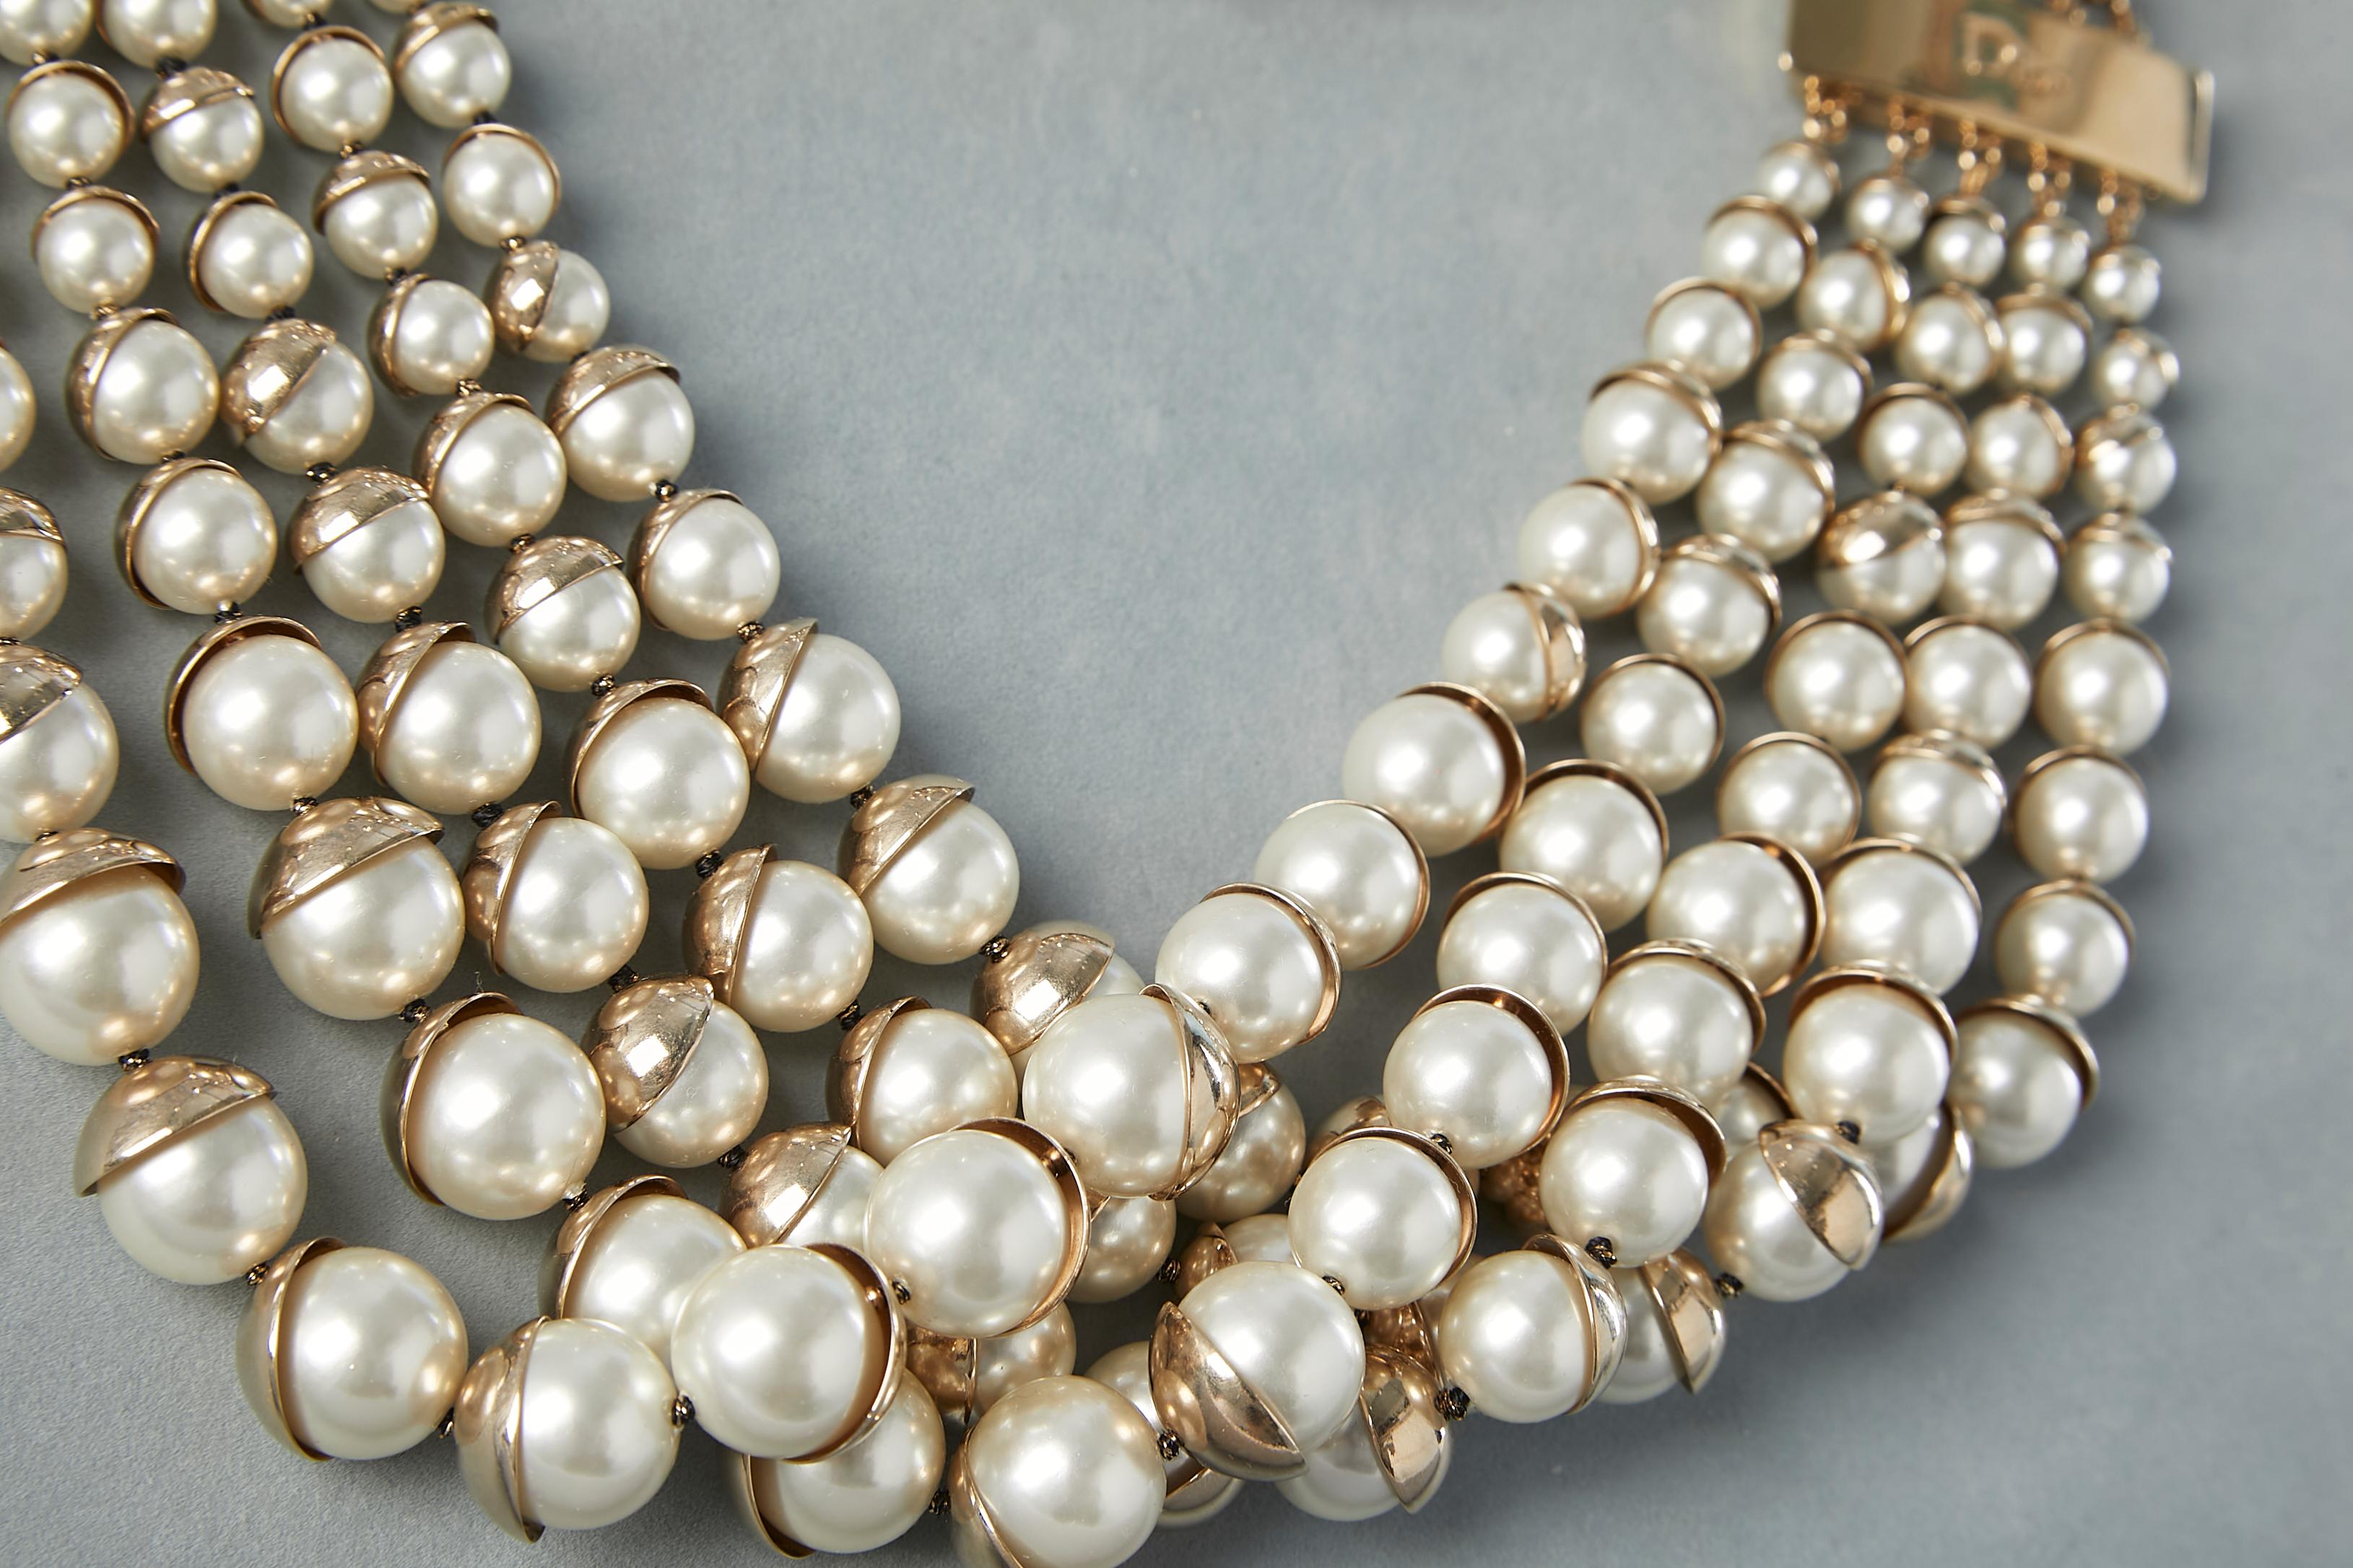 Collier multibrins avec perles. Fermoir en métal doré. La boîte et l'étui sont fournis.
Diamètre = 48 cm